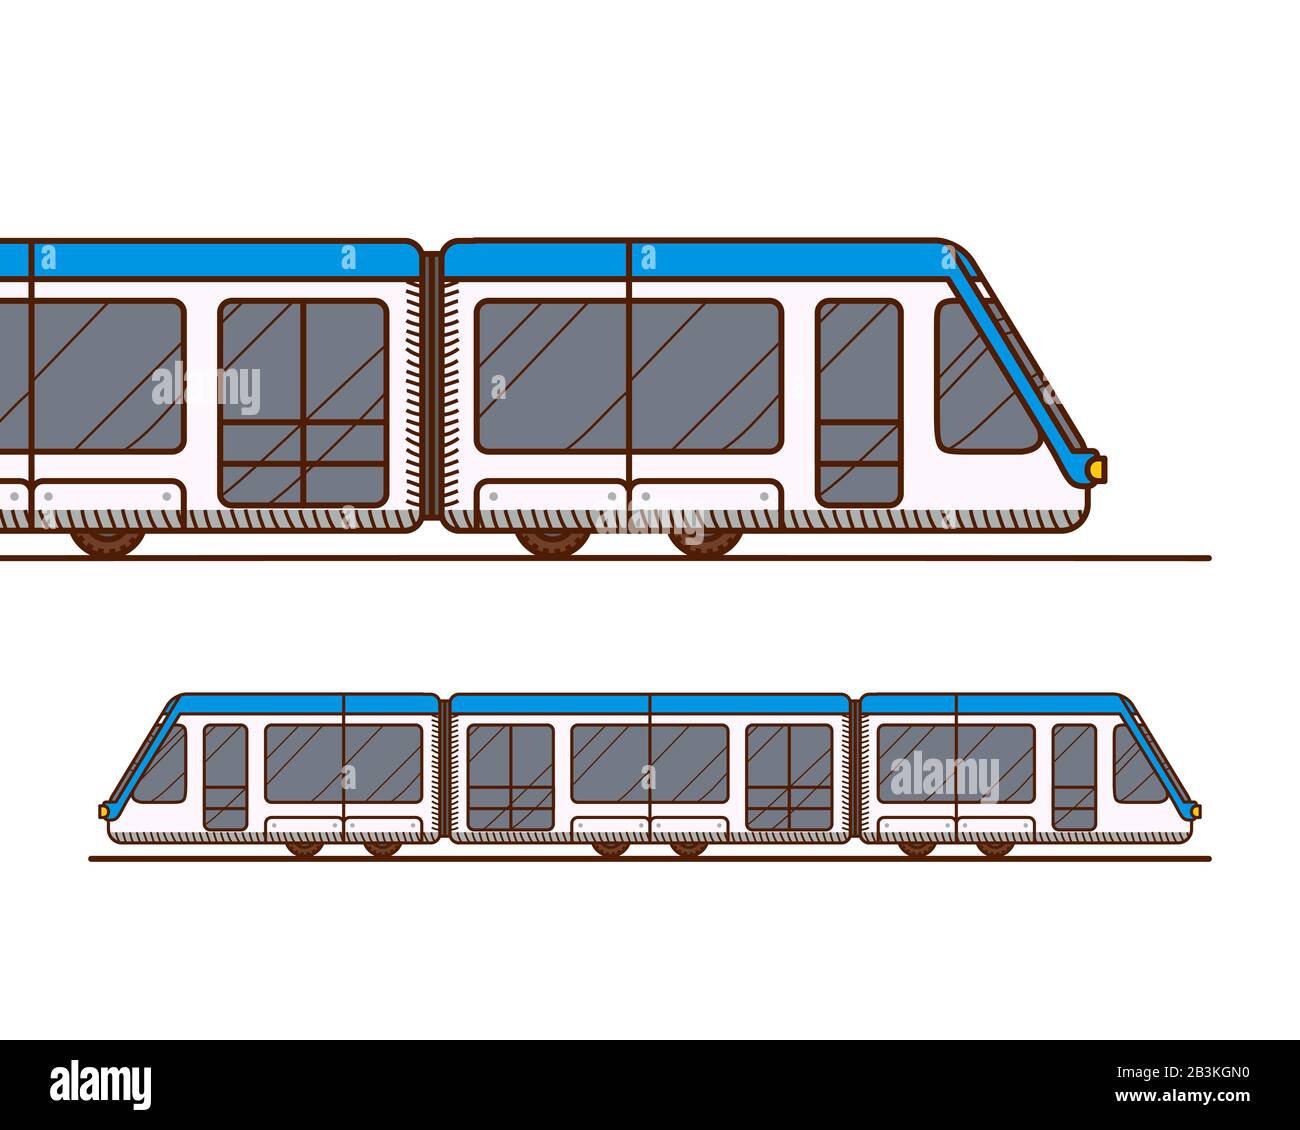 Moderno treno ad alta velocità. Viaggi ferroviari e turismo ferroviario. Metropolitana o metro isolato su sfondo bianco Illustrazione Vettoriale